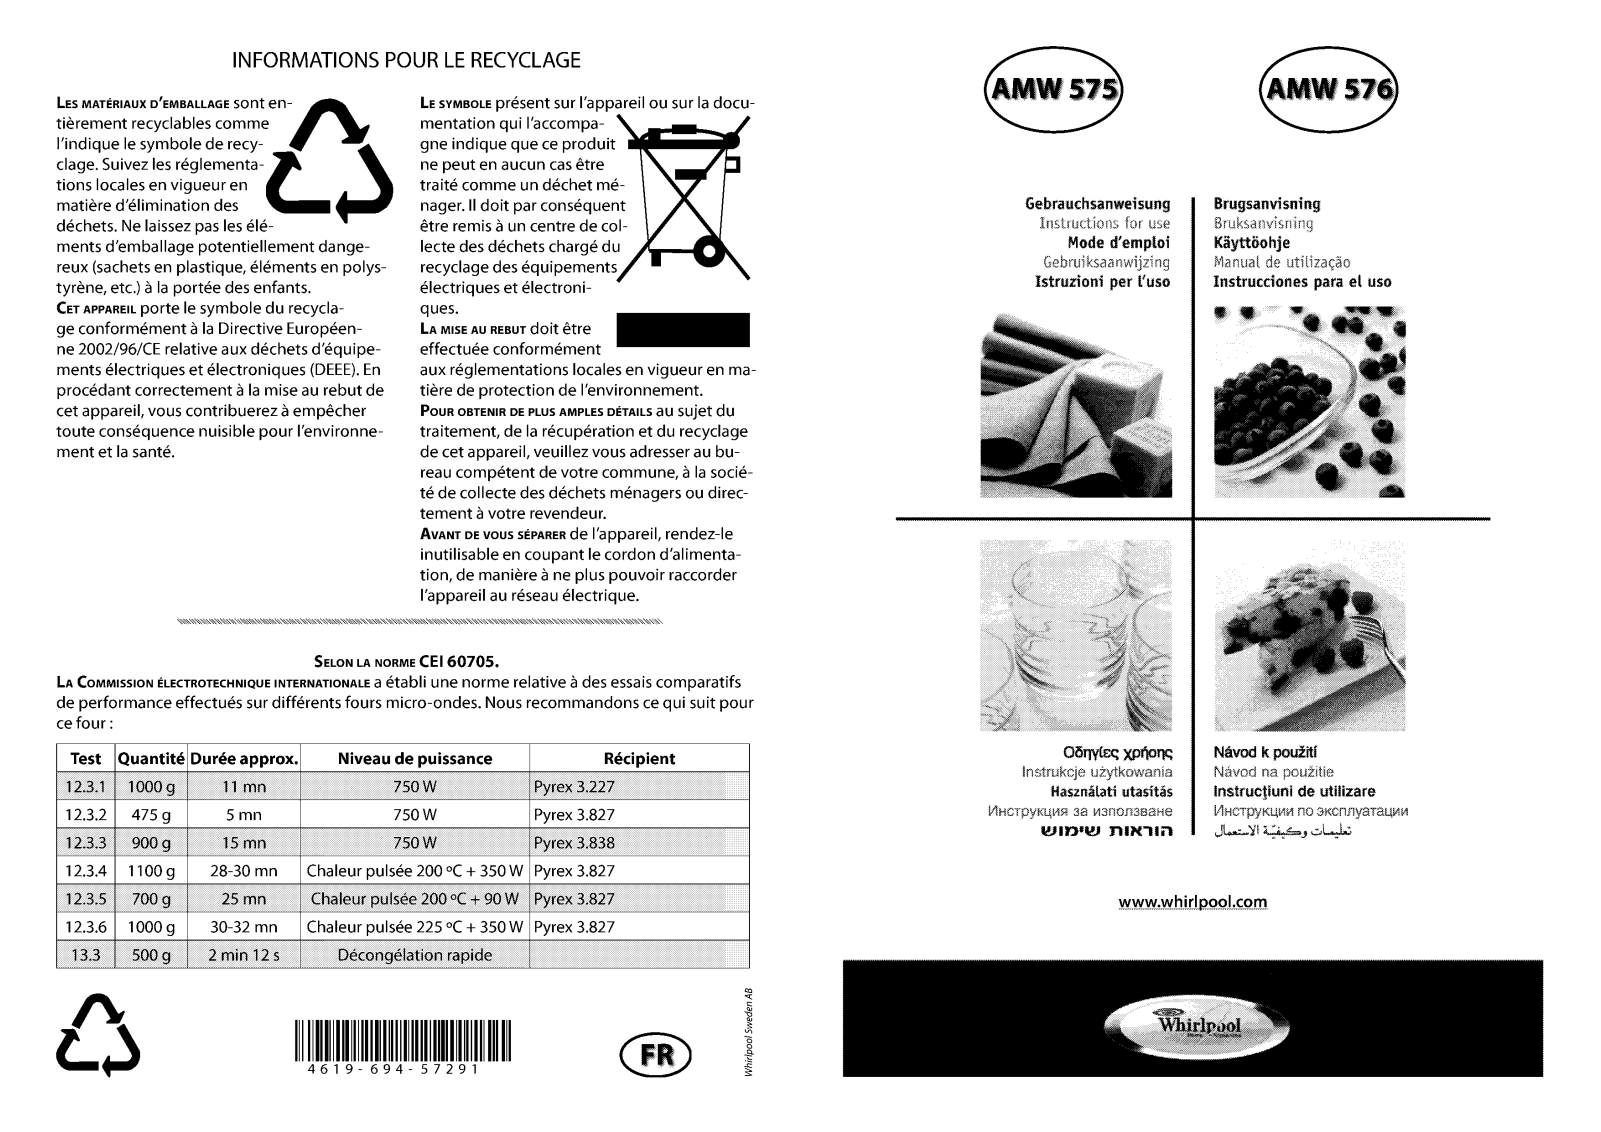 WHIRLPOOL AMW 575 IX User Manual